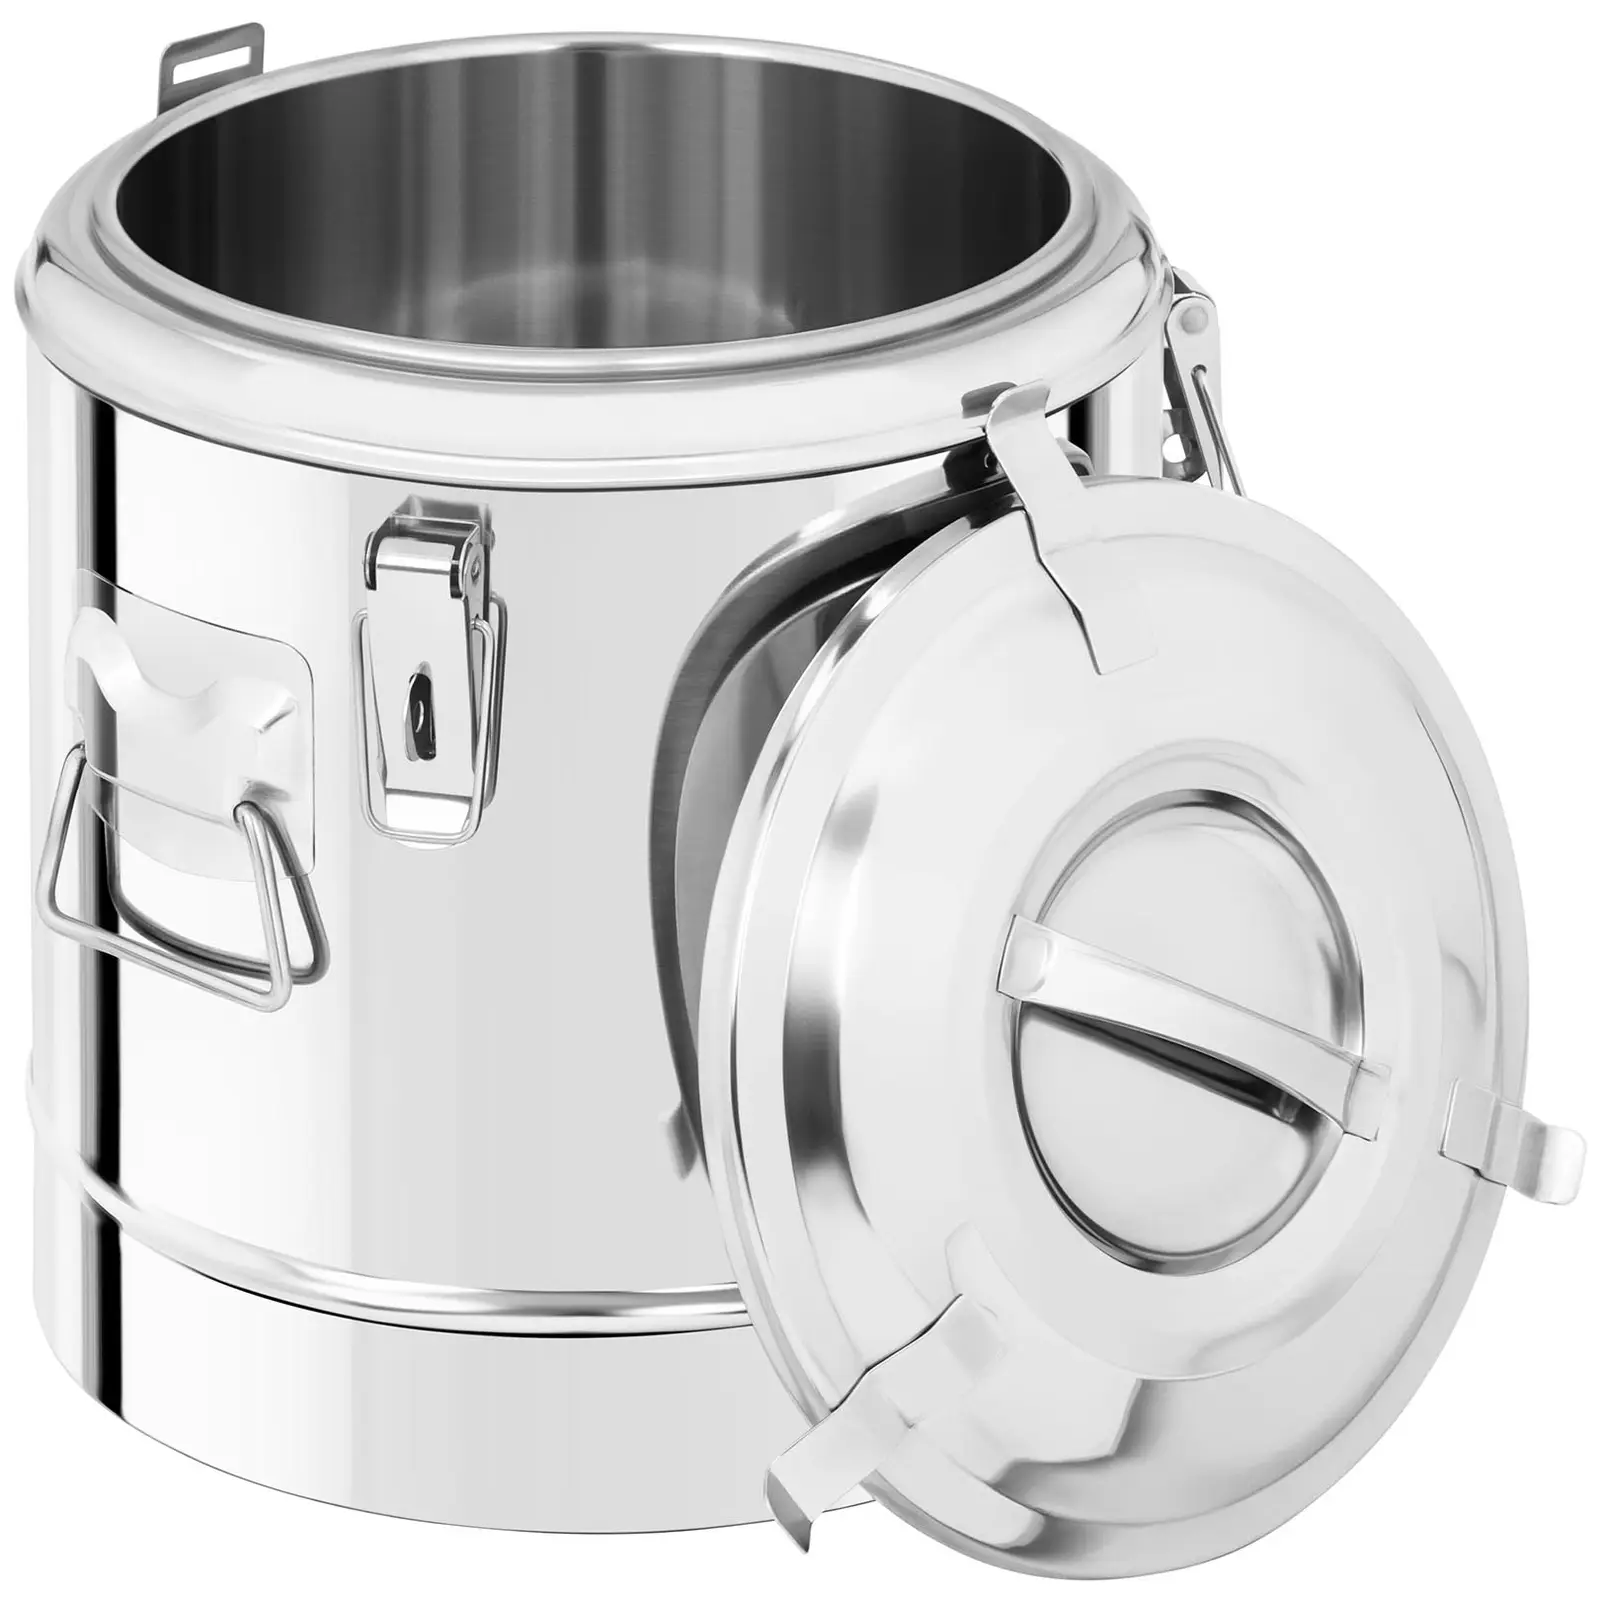 Contenitore termico in acciaio inox - 12 L - con rubinetto di scarico